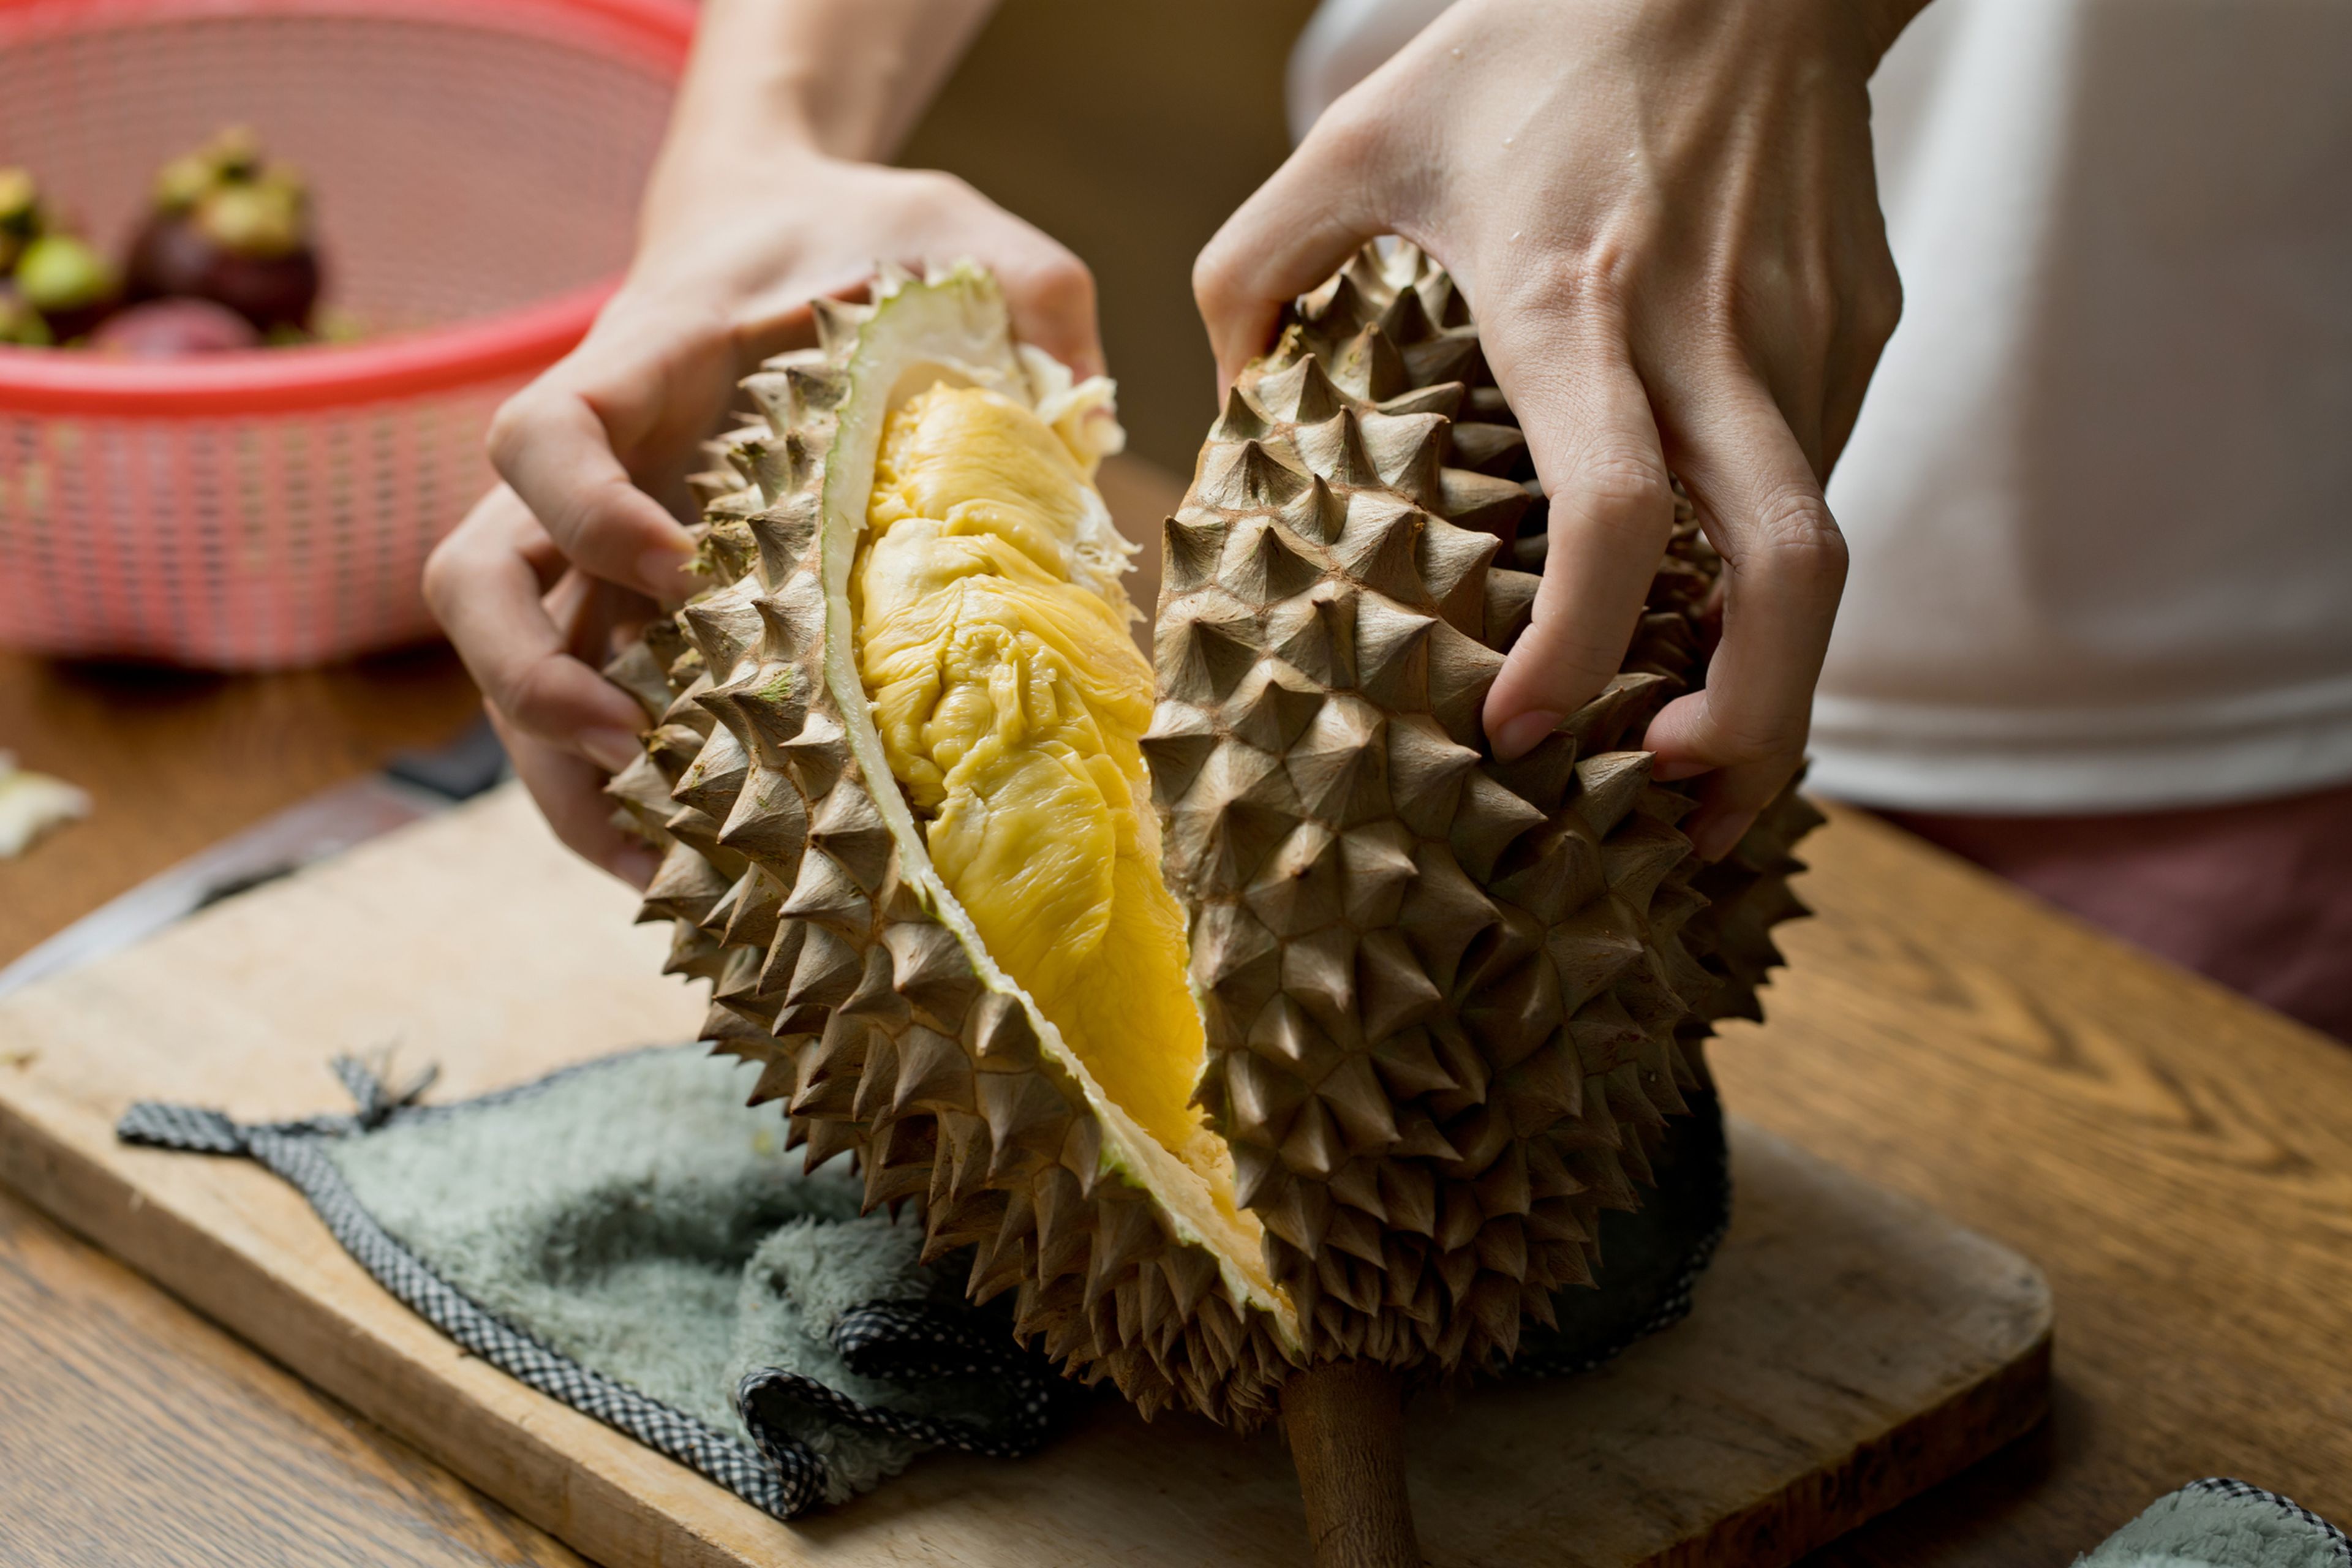 El durián es considerado por muchos el alimento más apestoso del mundo.